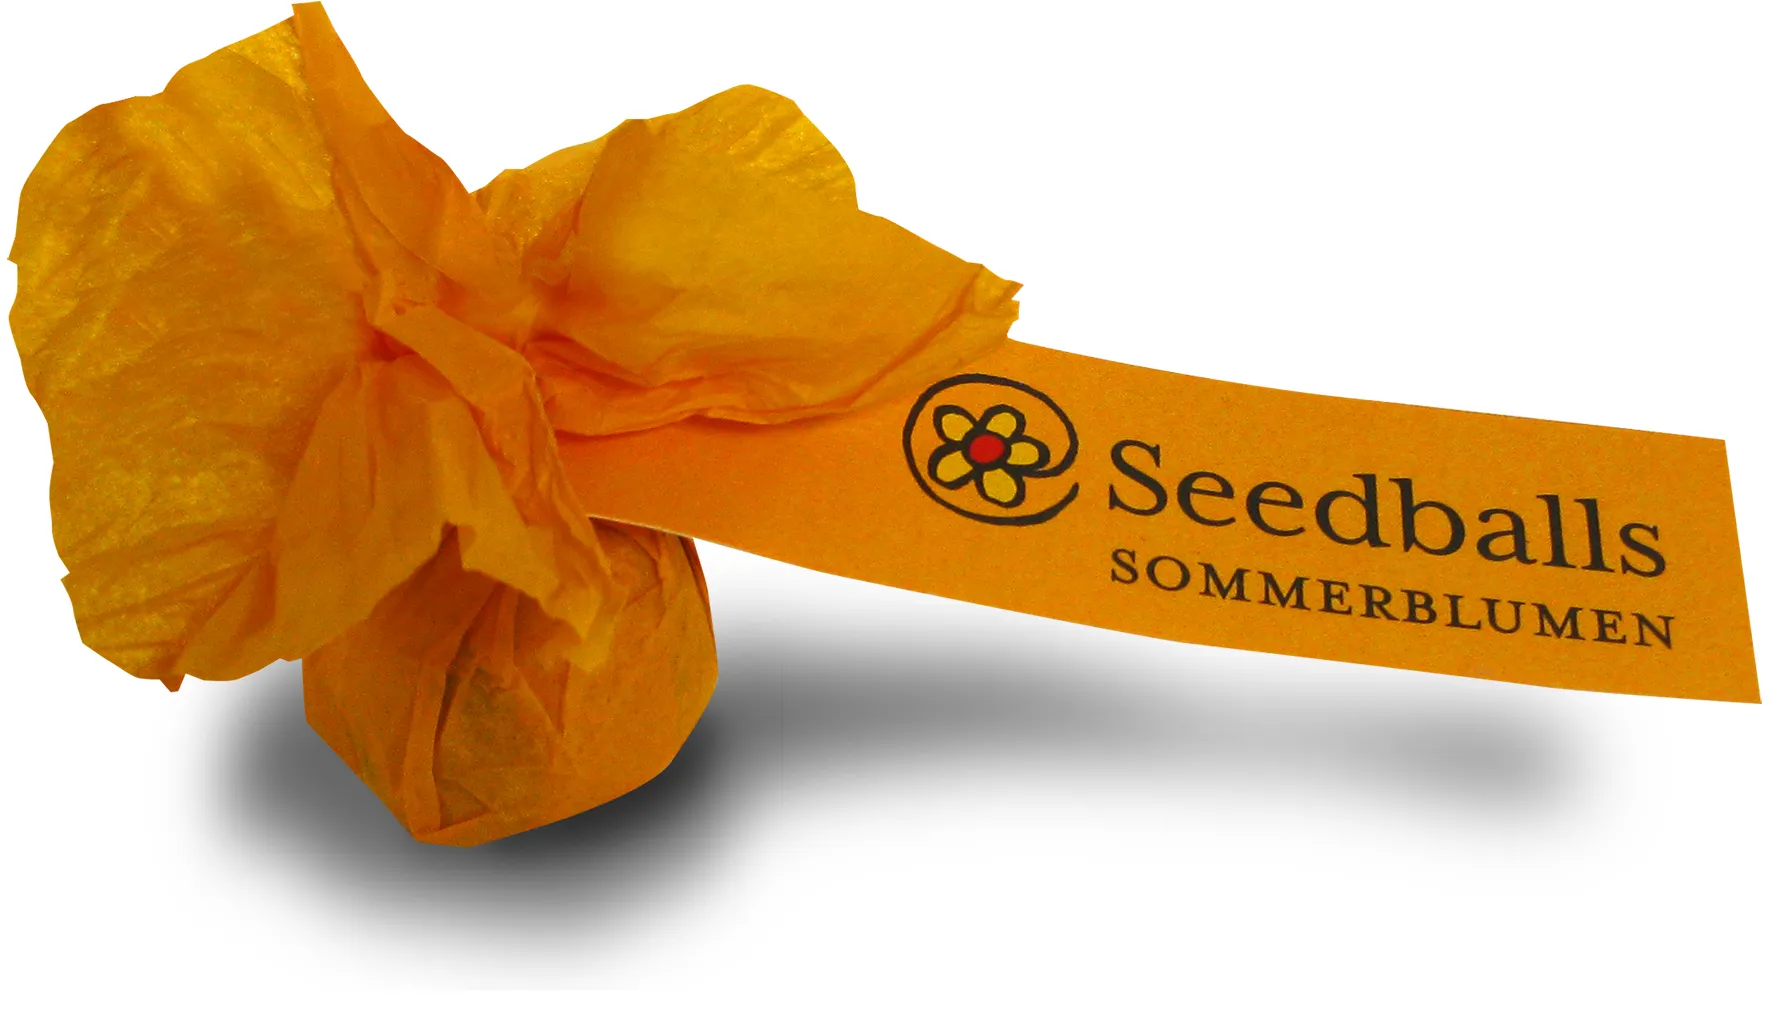 Seedballs Sommerblumenmischung (1 Stk.)